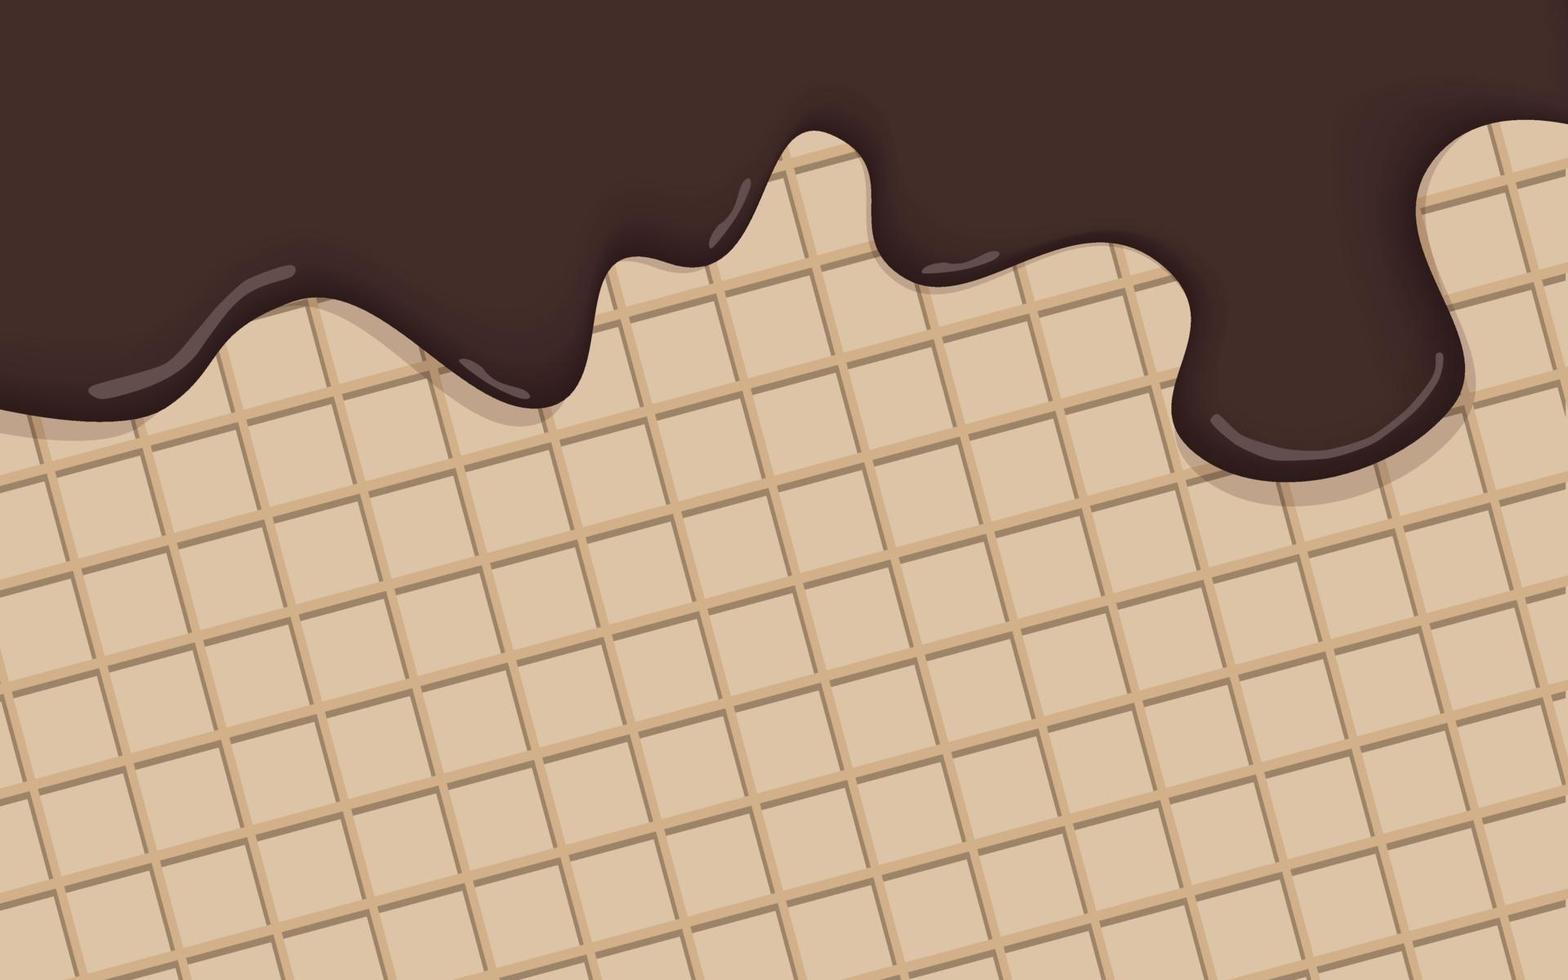 realistische schokoladeneiscreme geschmolzen auf vanillekegelhintergrundvektor. Schokoladencreme schmilzt auf der Waffeloberfläche. eine vorlage für ein süßes menü oder einen werbespot. vektor